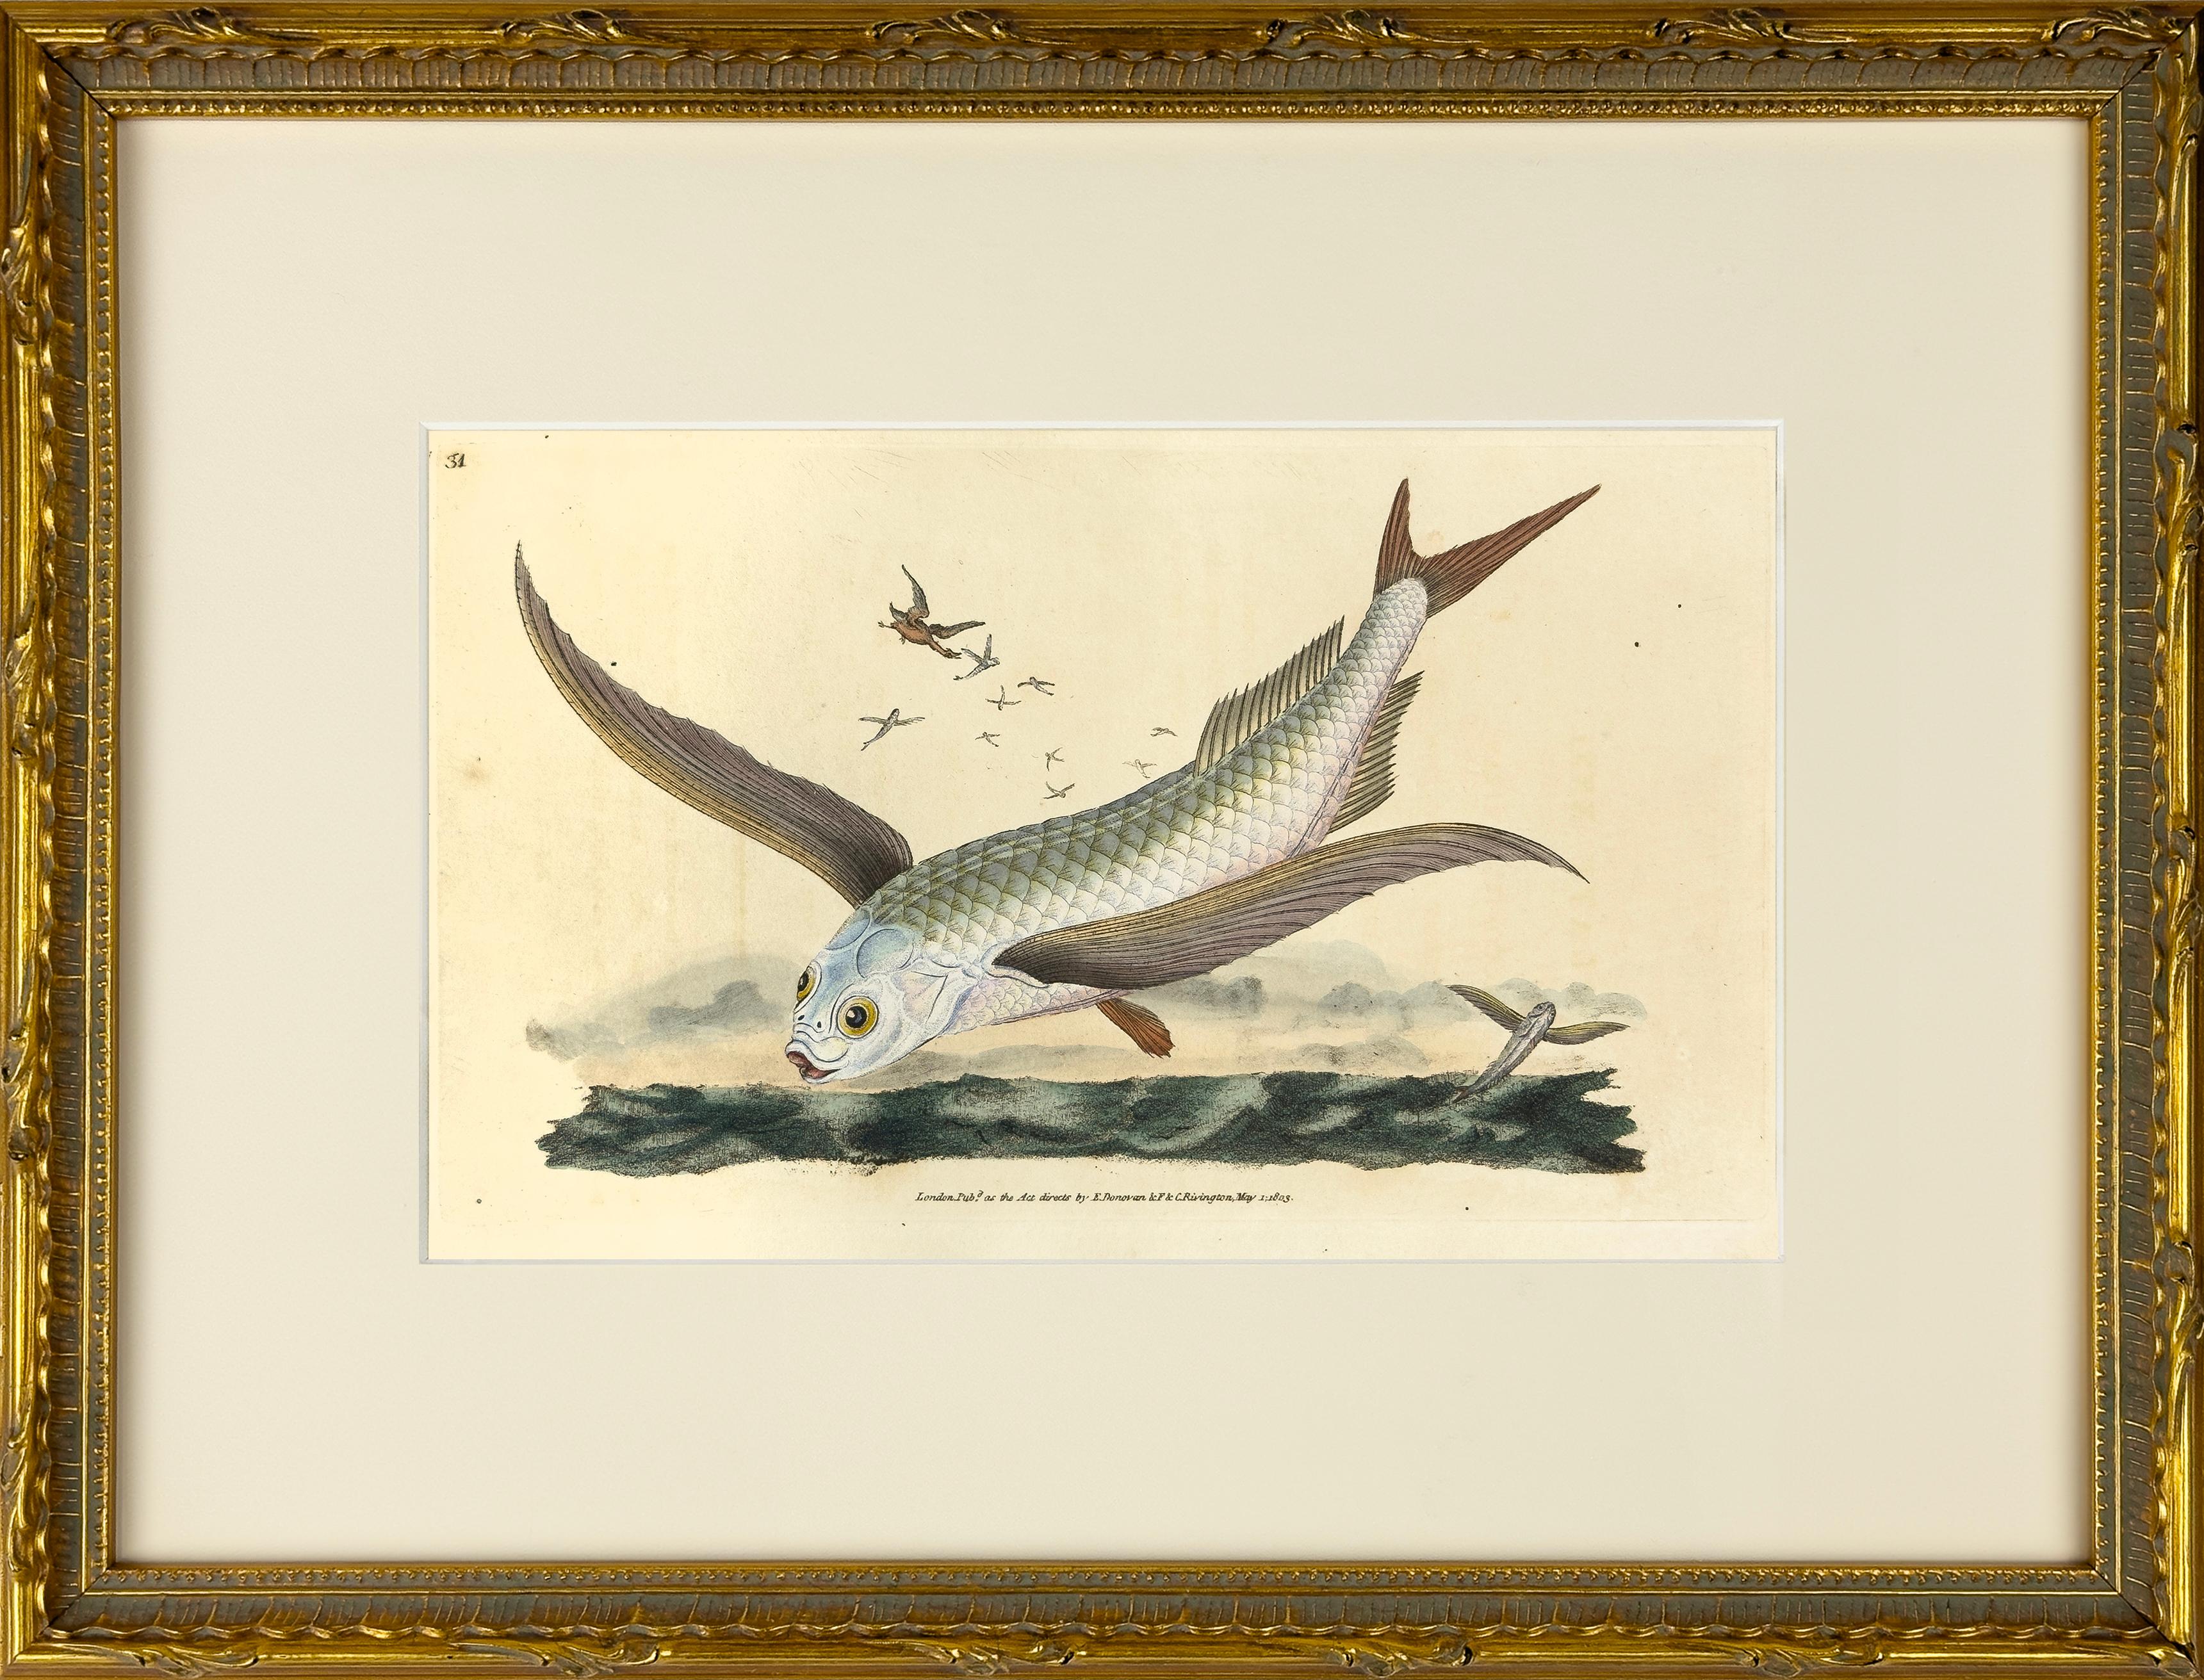 31: Exocoetus Volantanen, häufige fliegende Fische – Print von Edward Donovan